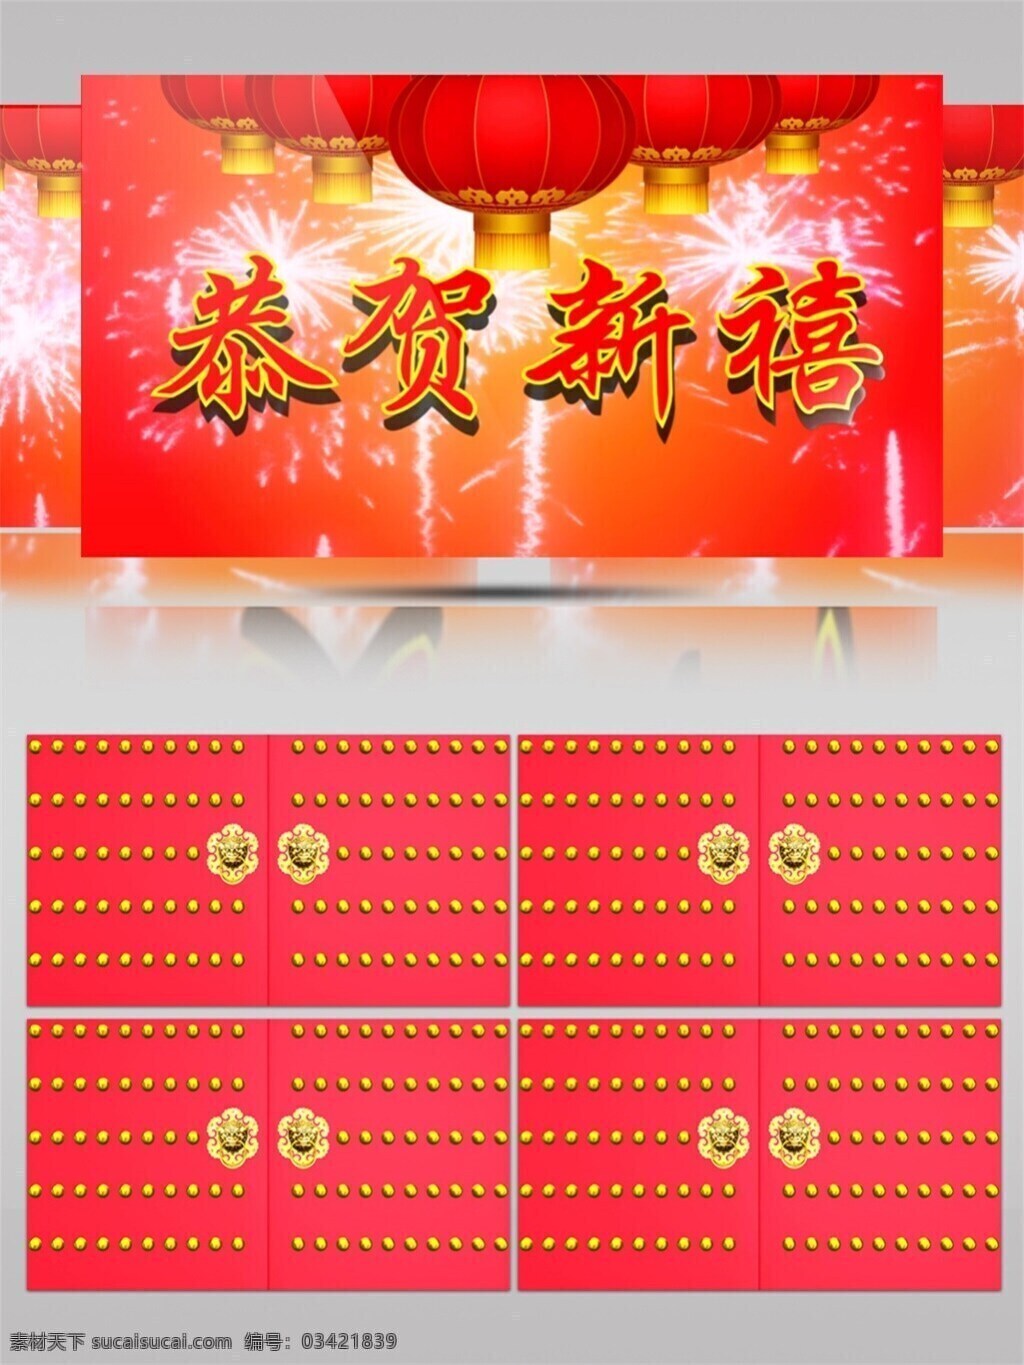 喜庆 节日 灯笼 视频 光斑散射 光束 红色 视觉享受 手机壁纸 新年 烟花